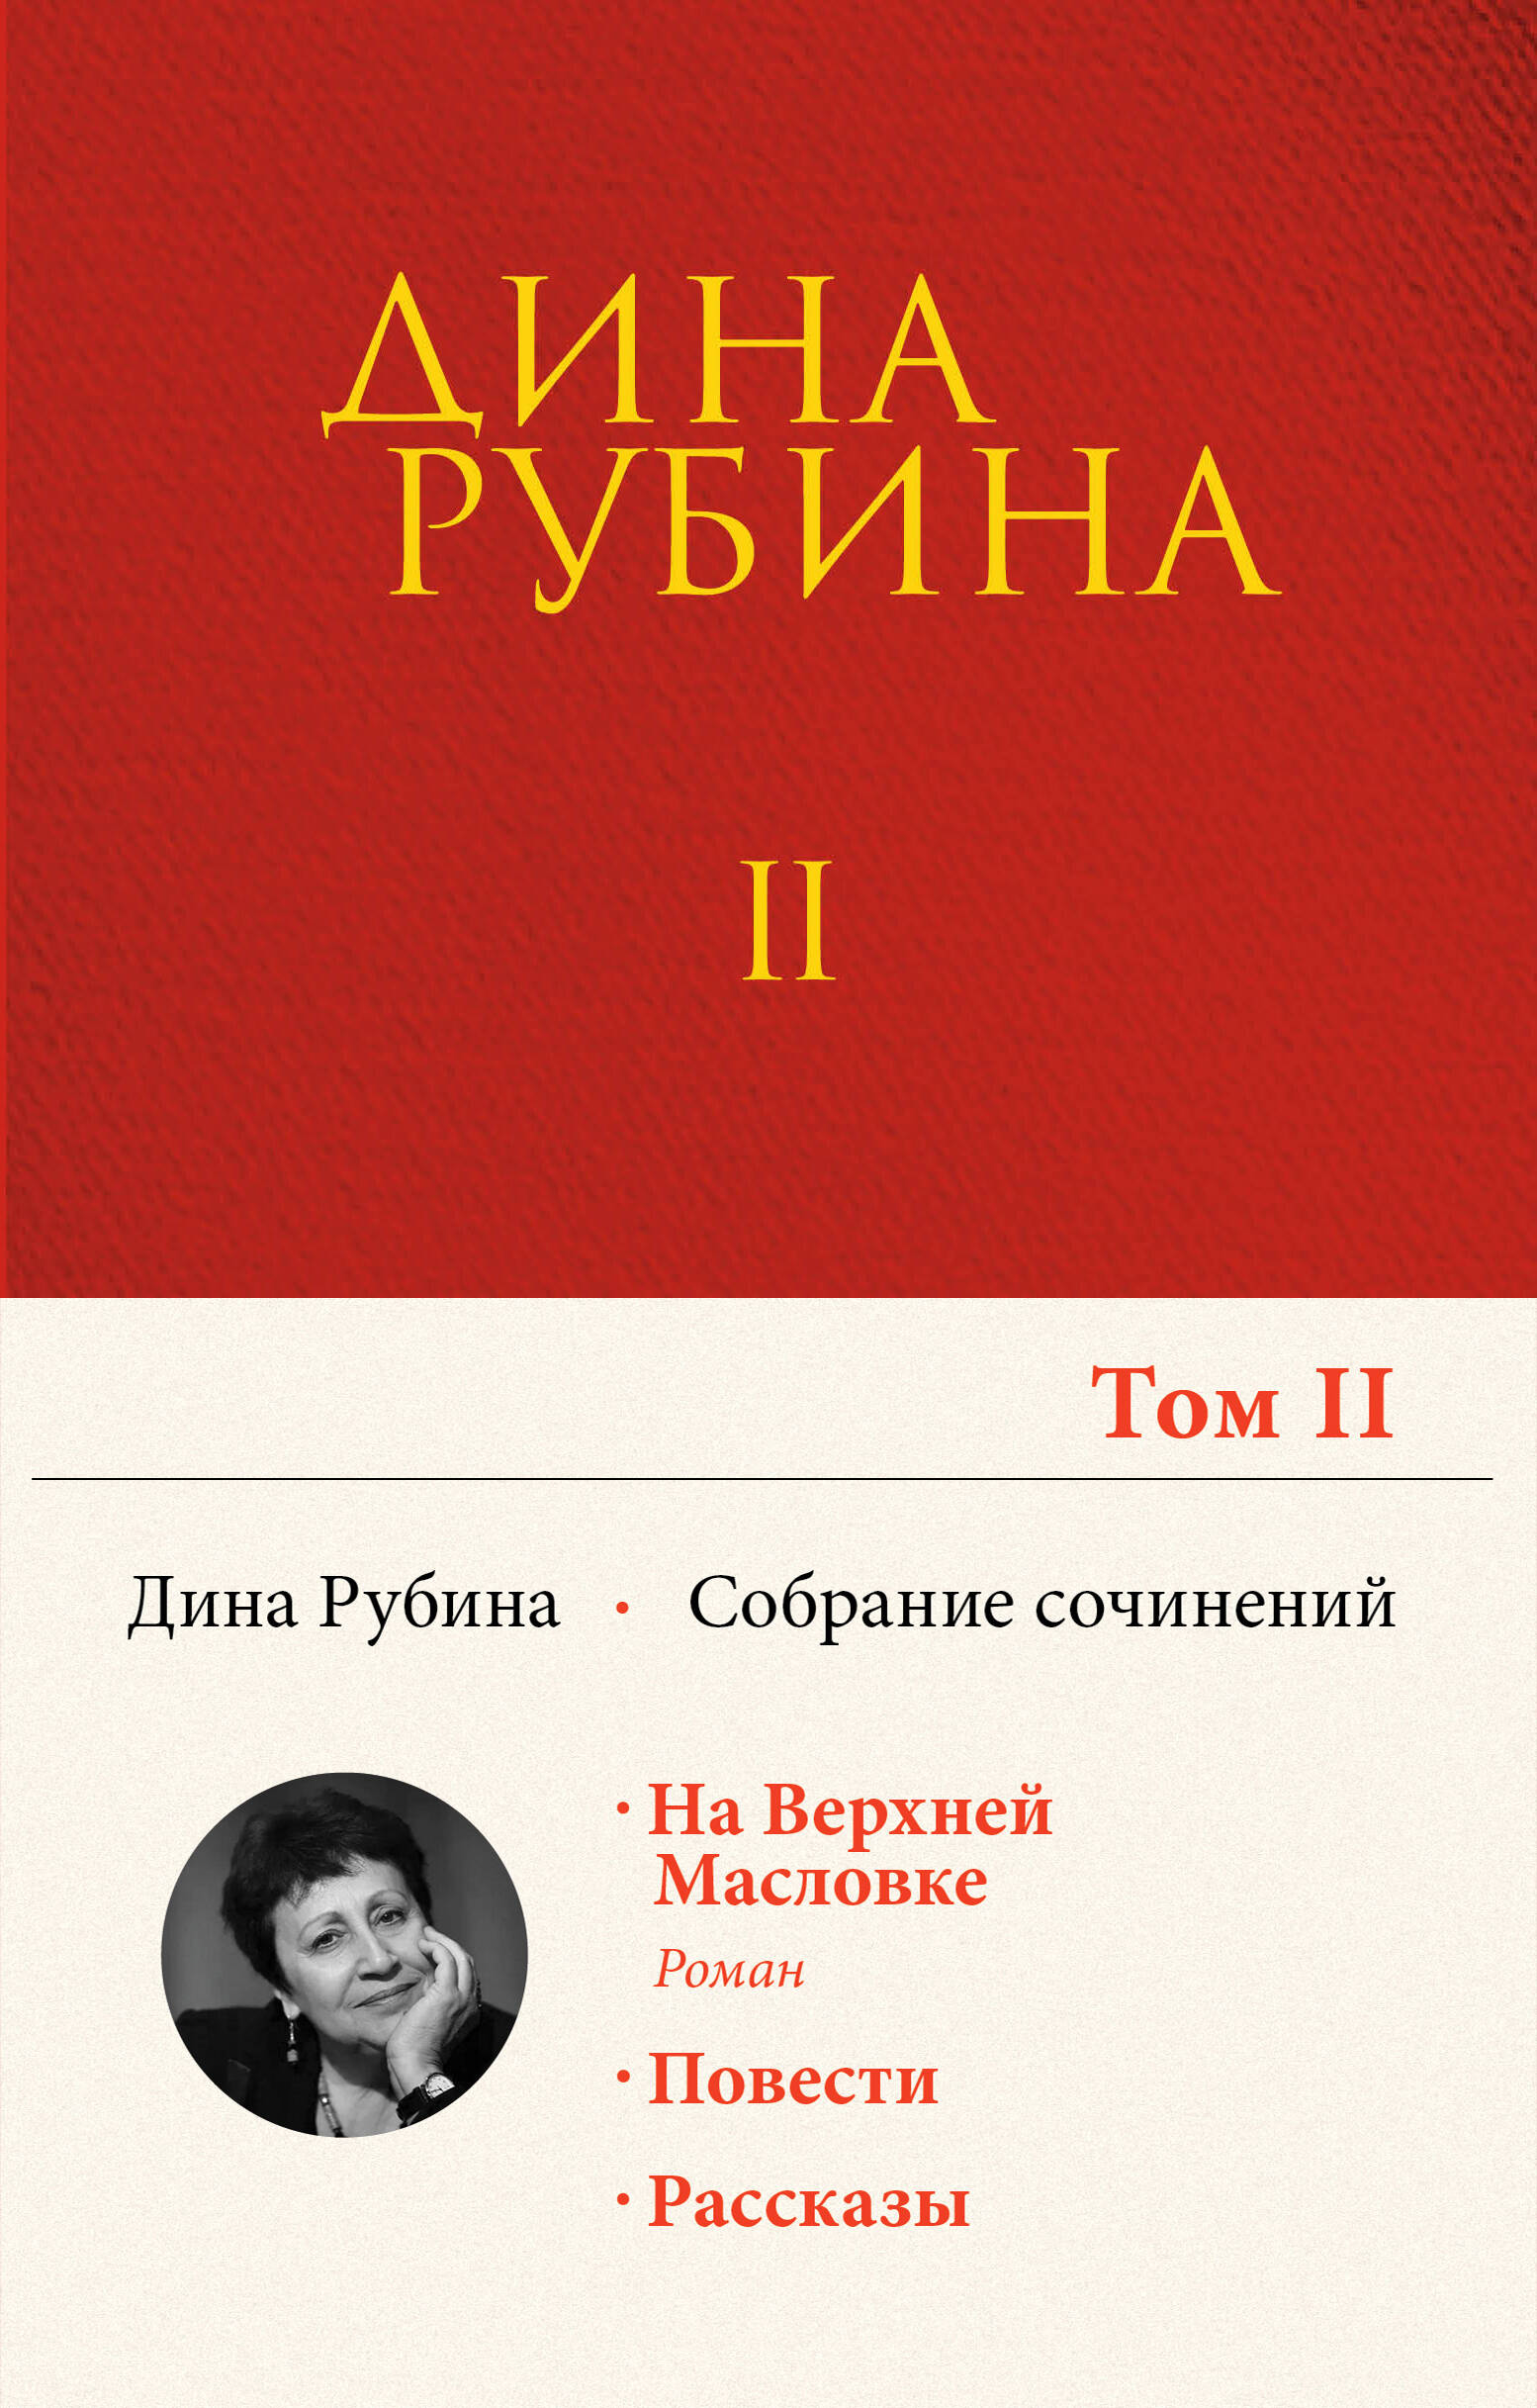 Дина Рубина. Собрание сочинений. I - XXI. Том II. 1983-1989